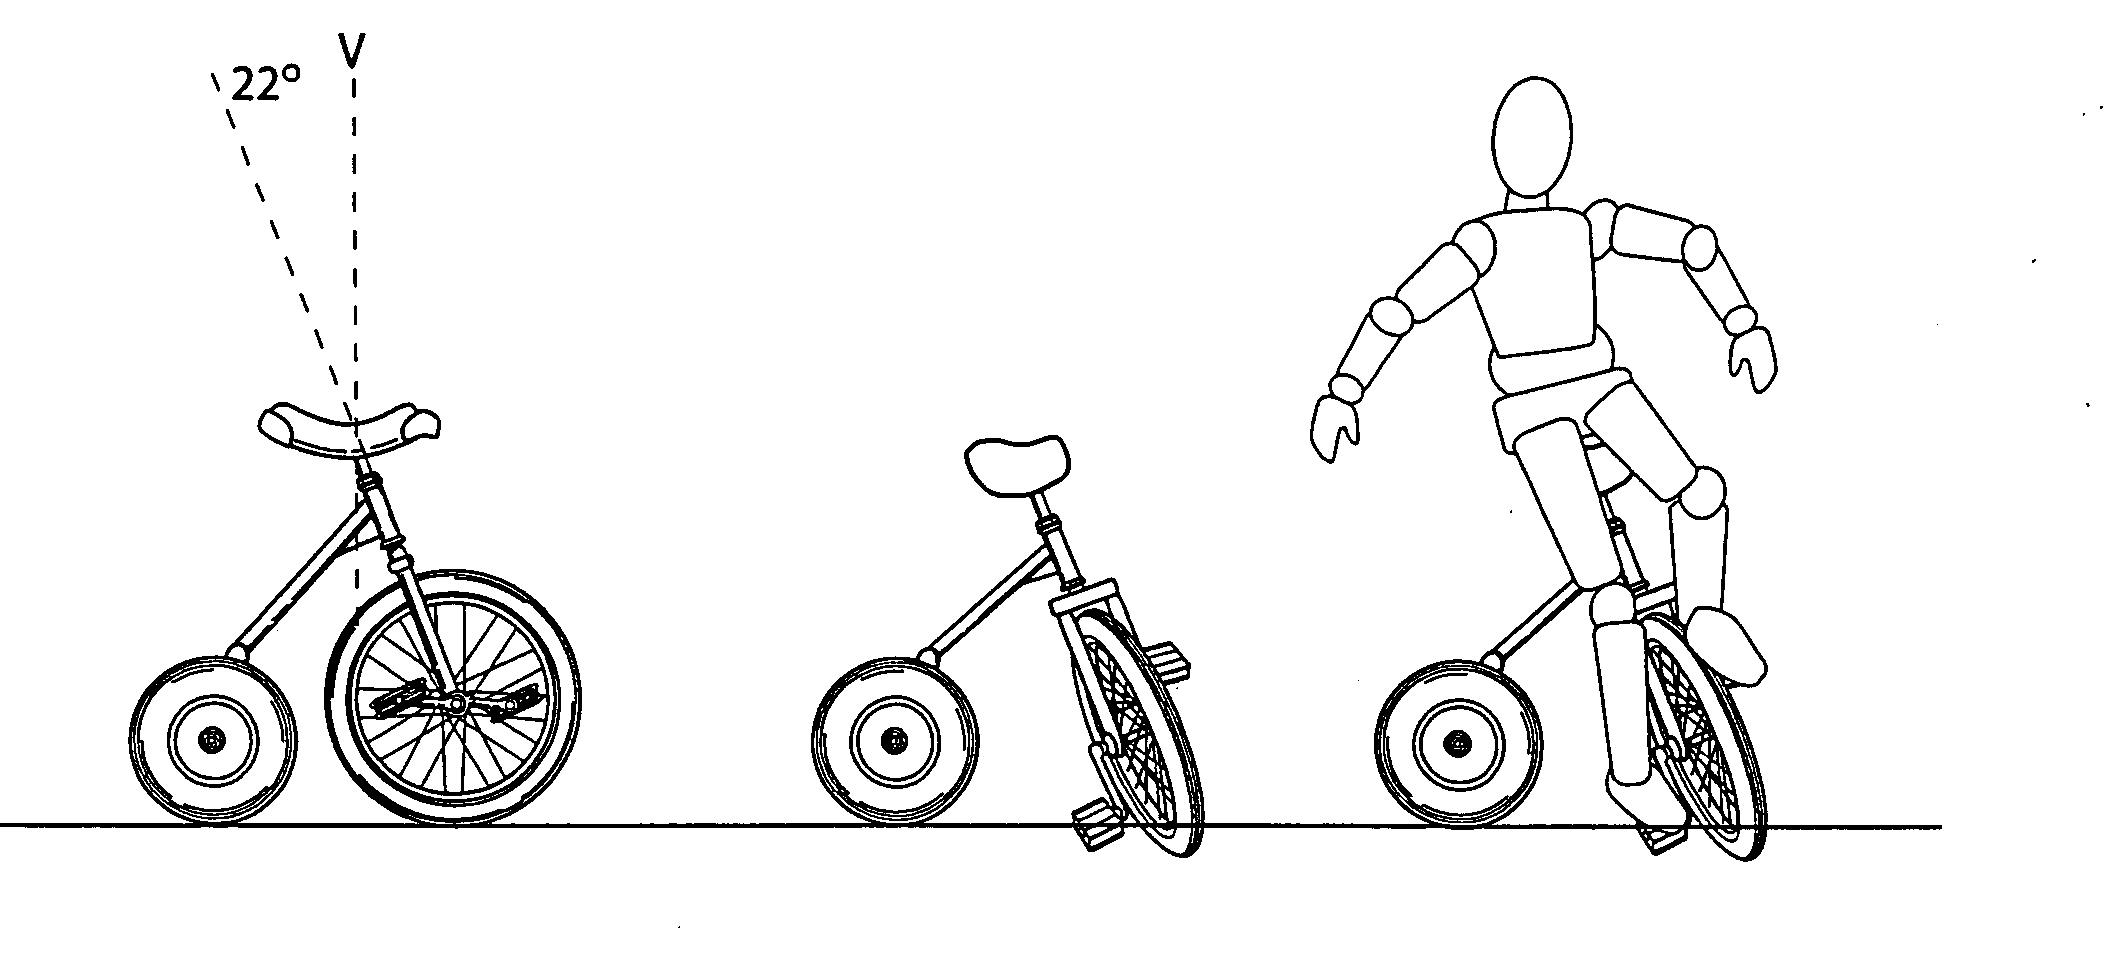 Multi-wheeled vehicle